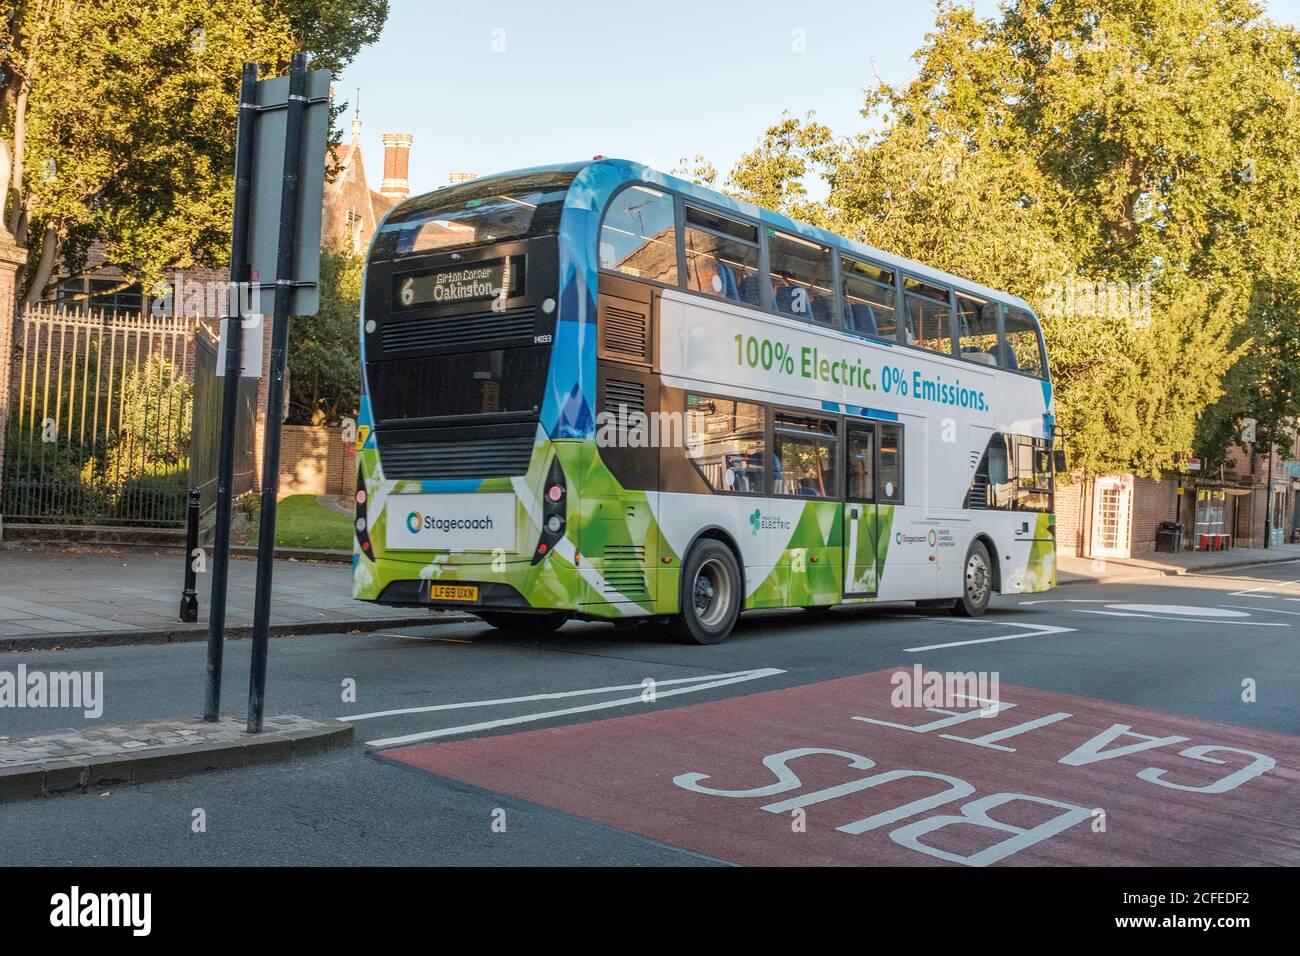 Der Elektrobus Cambridge Citi 6. Der Elektrobus ist 100% elektrisch, 0% Emissionen.ein Elektrobus emittiert 81 Tonnen weniger von C02 pro Jahr. Stockfoto